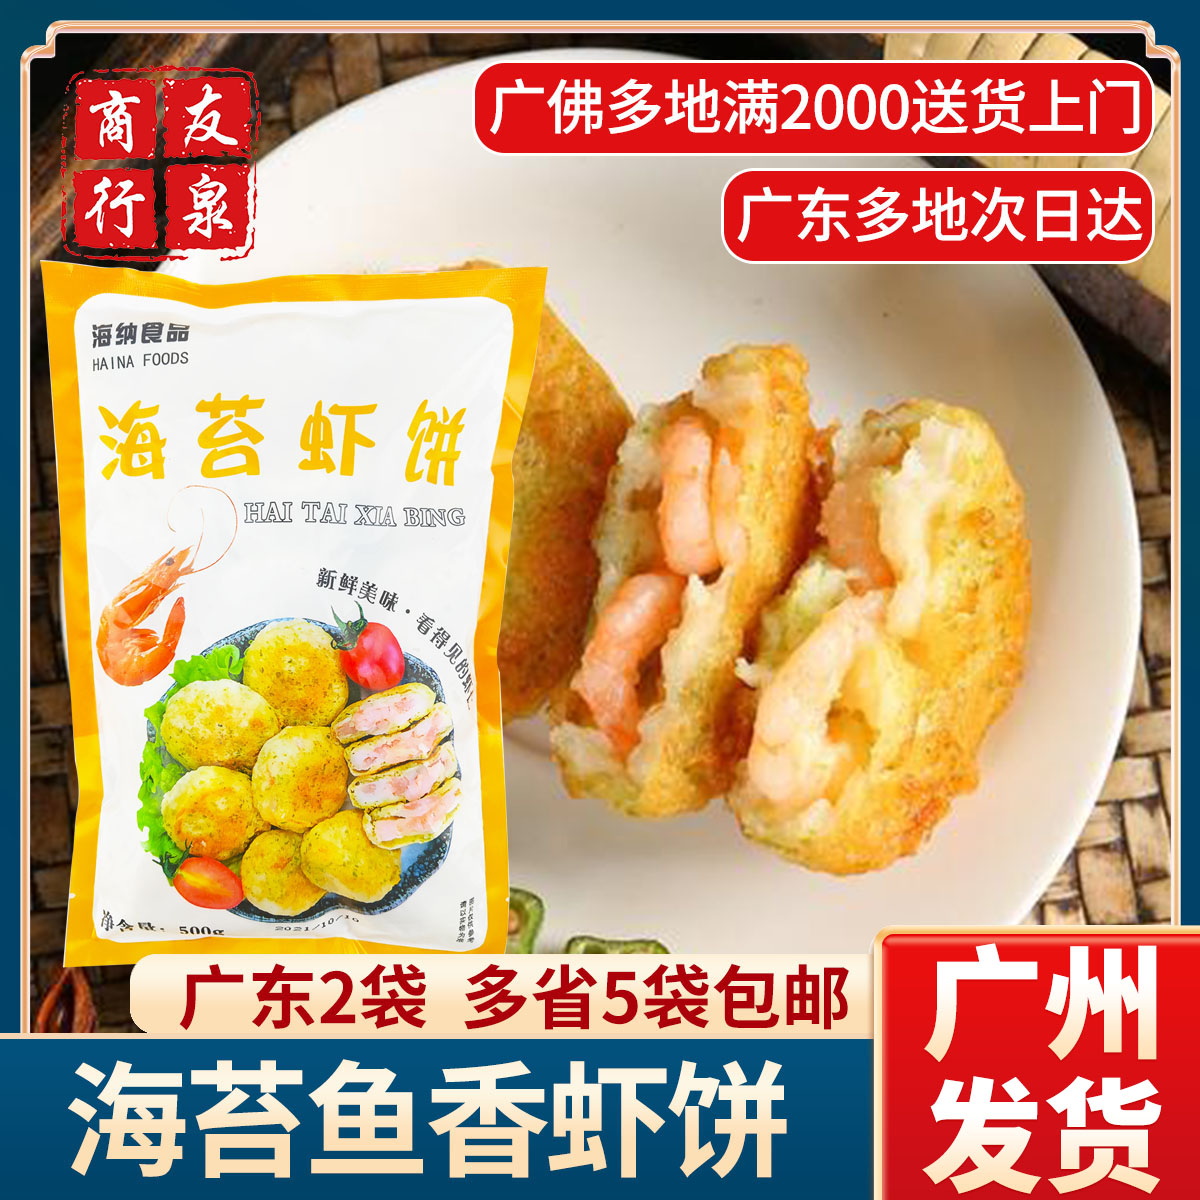 油炸虾饼 | 用沙司, 推荐菜谱 | 富留得客食品（上海）有限公司